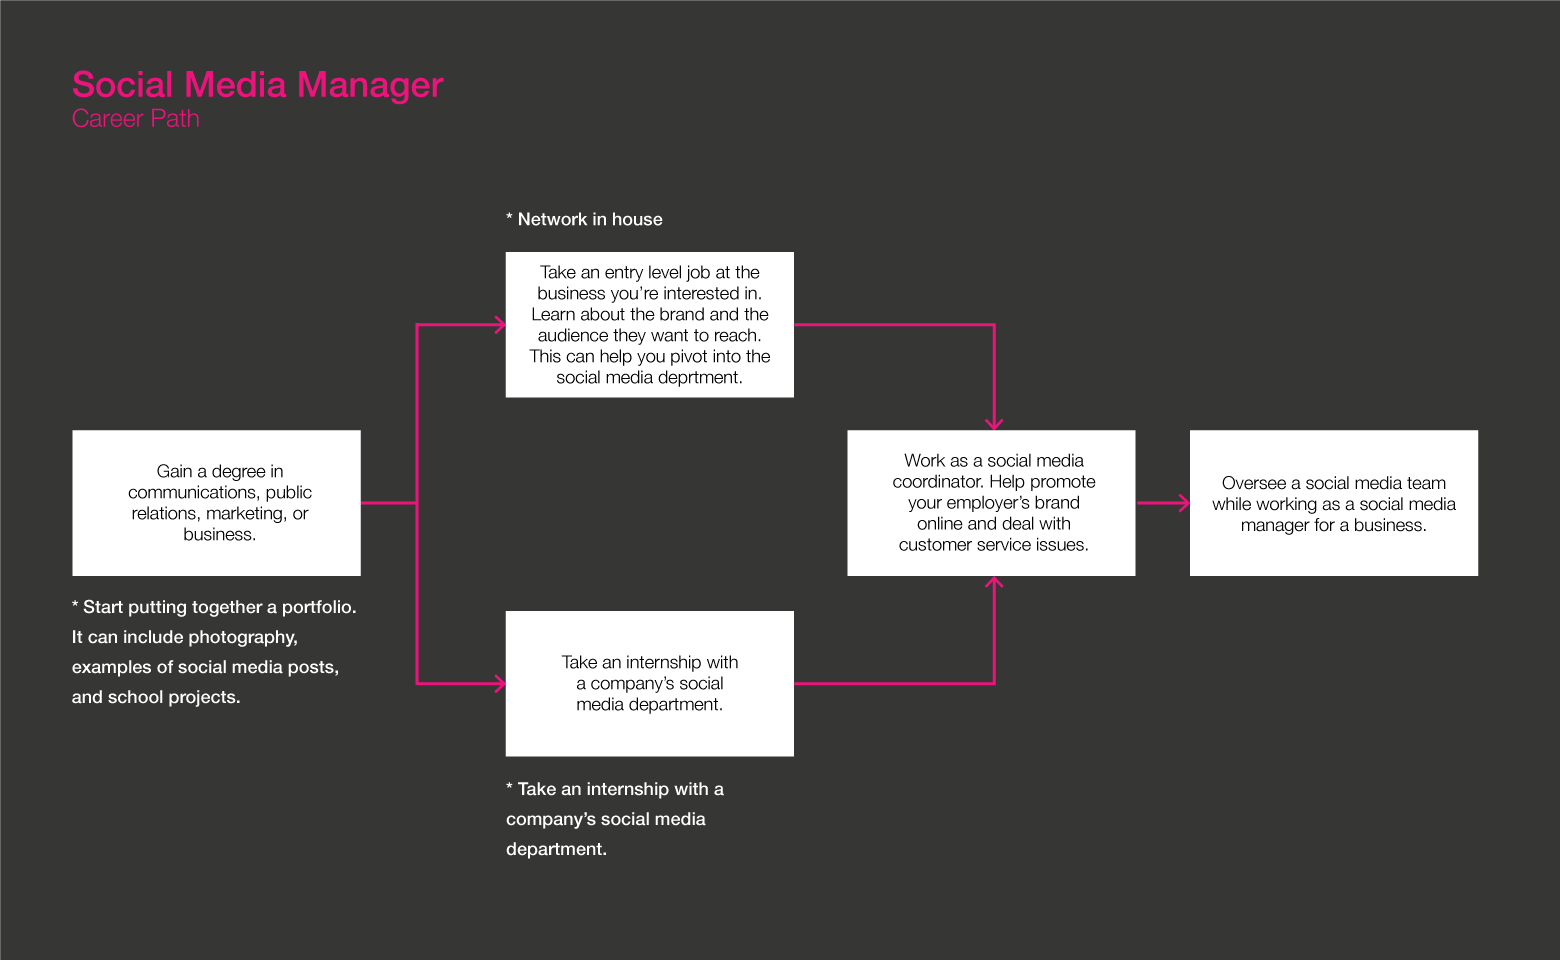 Social media manager roadmap